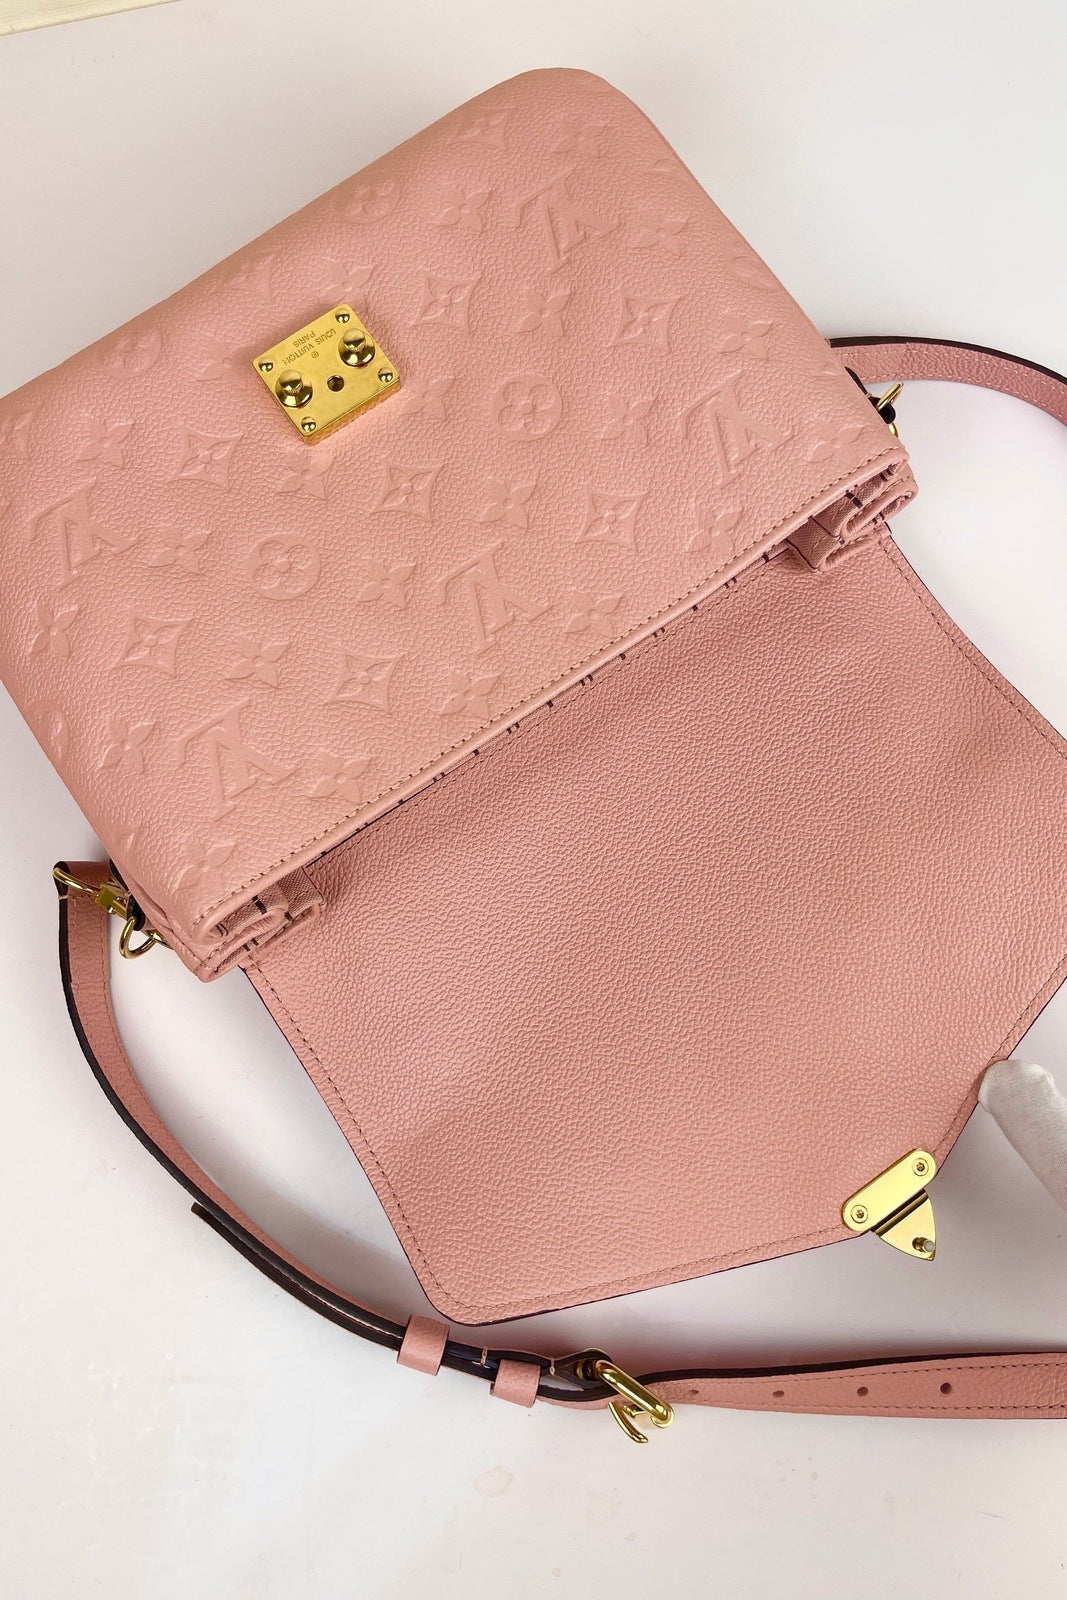 Louis Vuitton Pochette Metis Bag Monogram Rose Poudre Pink | 3D model